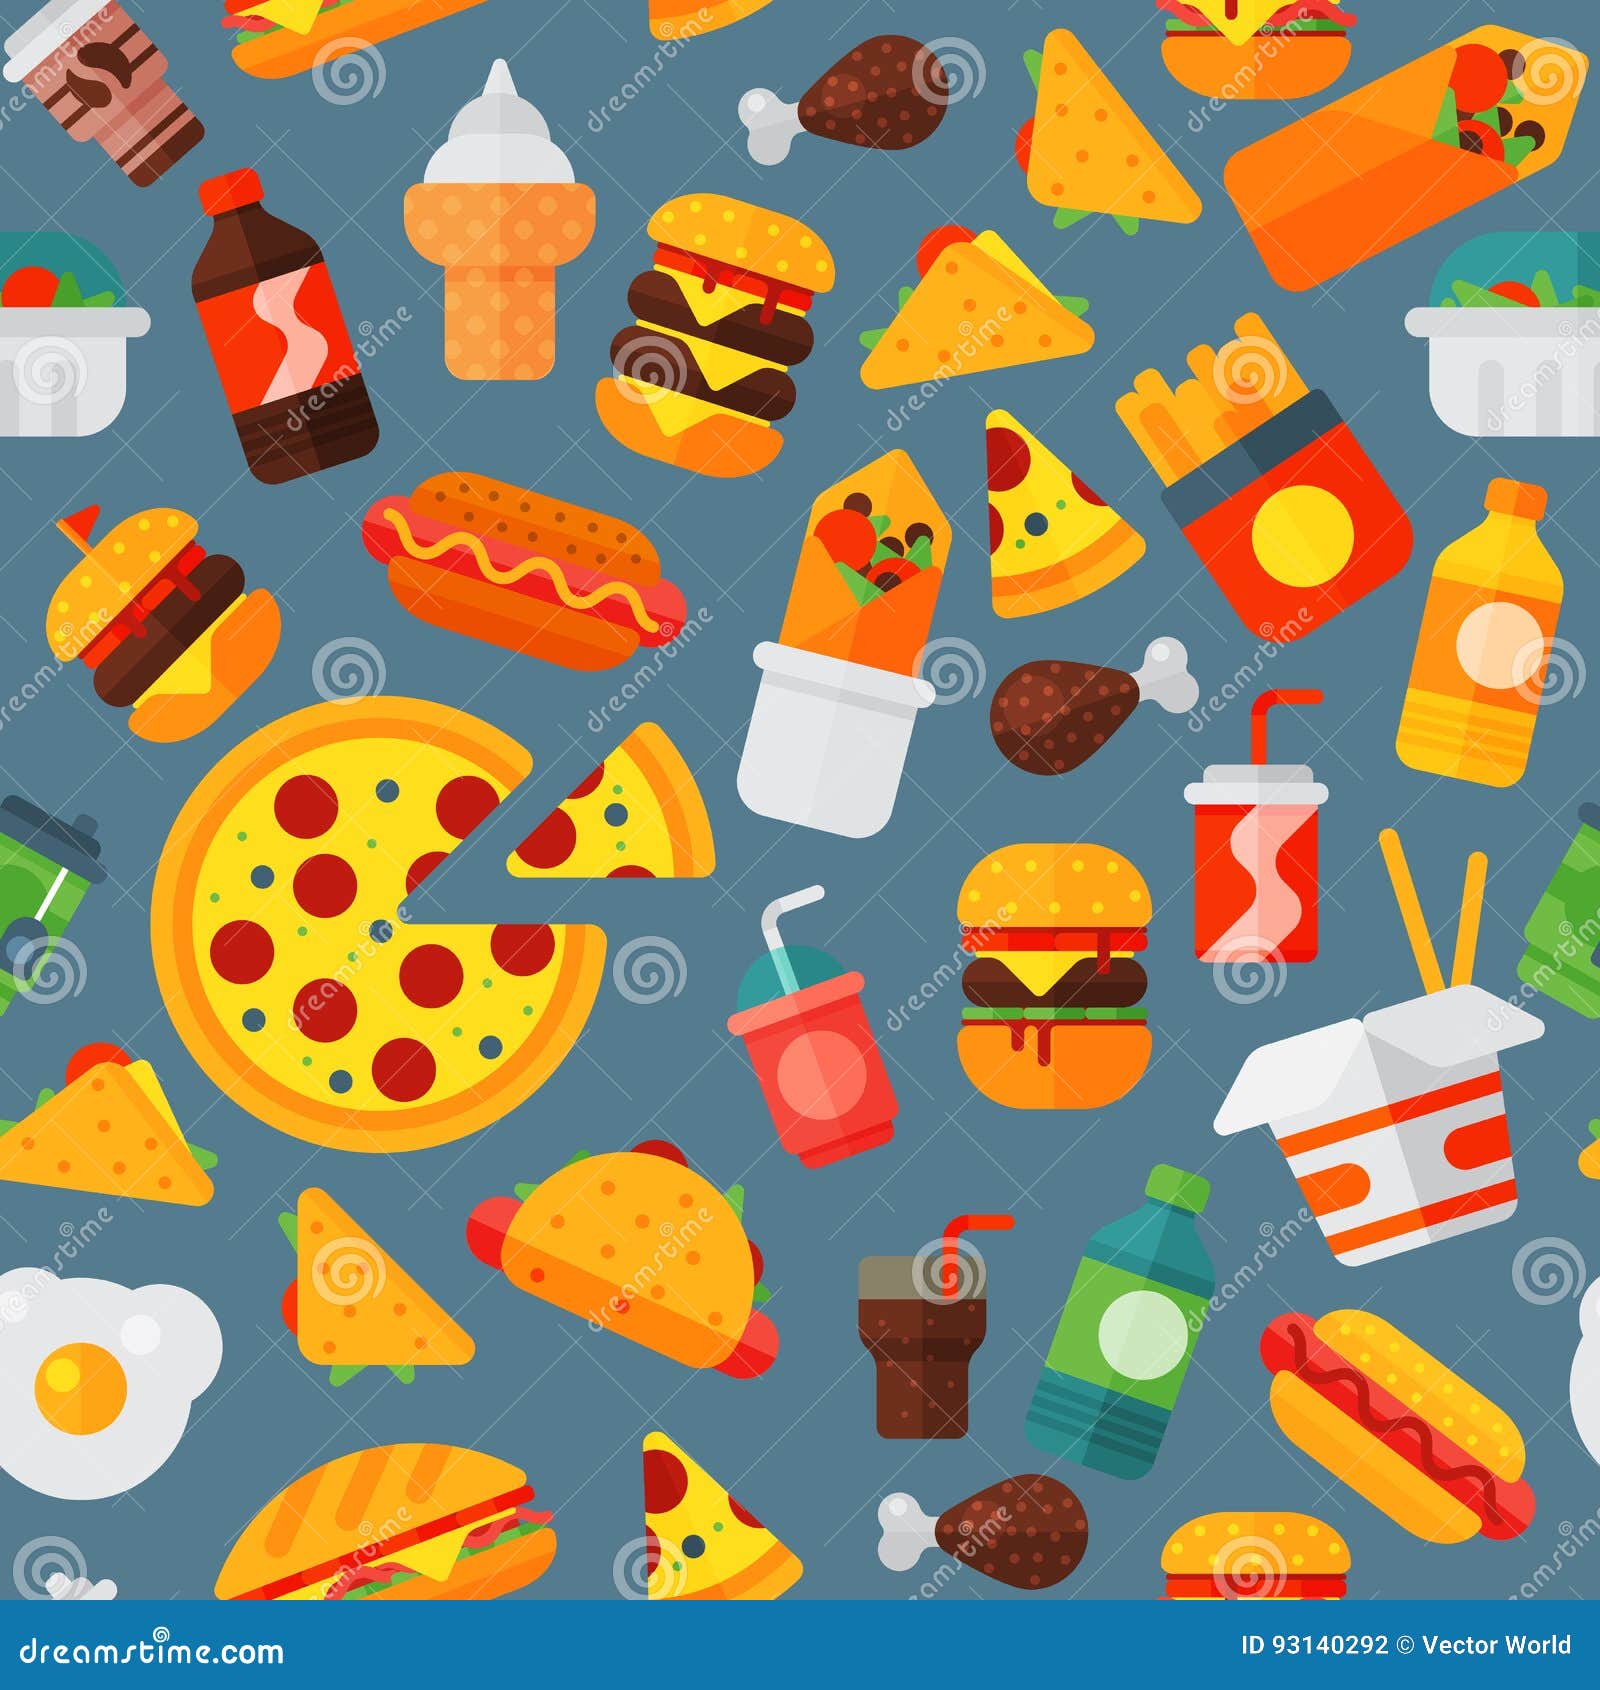 Junk Food Pattern Stock Illustrations – 4,953 Junk Food Pattern Stock  Illustrations, Vectors & Clipart - Dreamstime